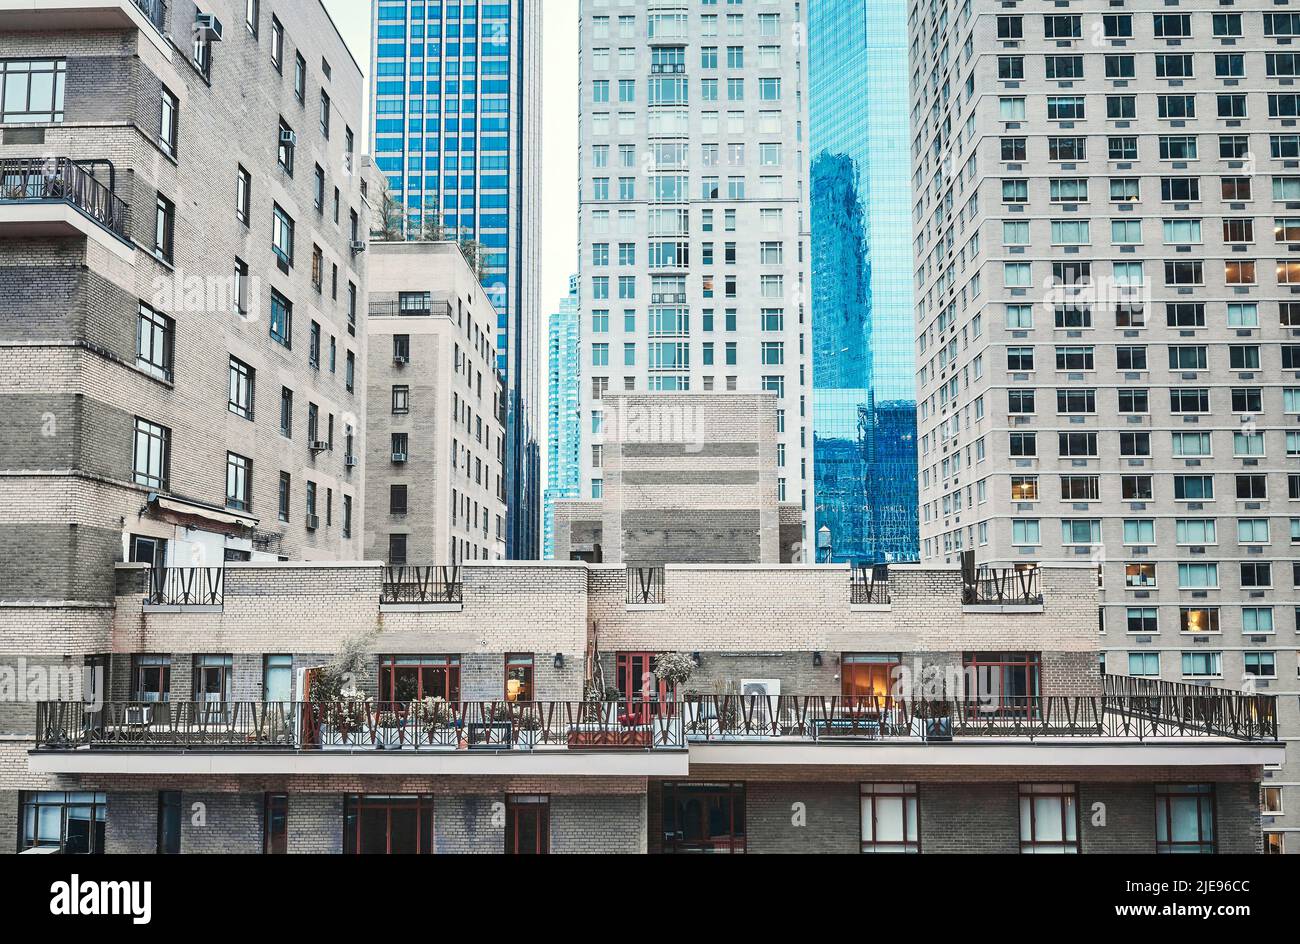 Image colorée de l'architecture de New York City, Manhattan, États-Unis. Banque D'Images